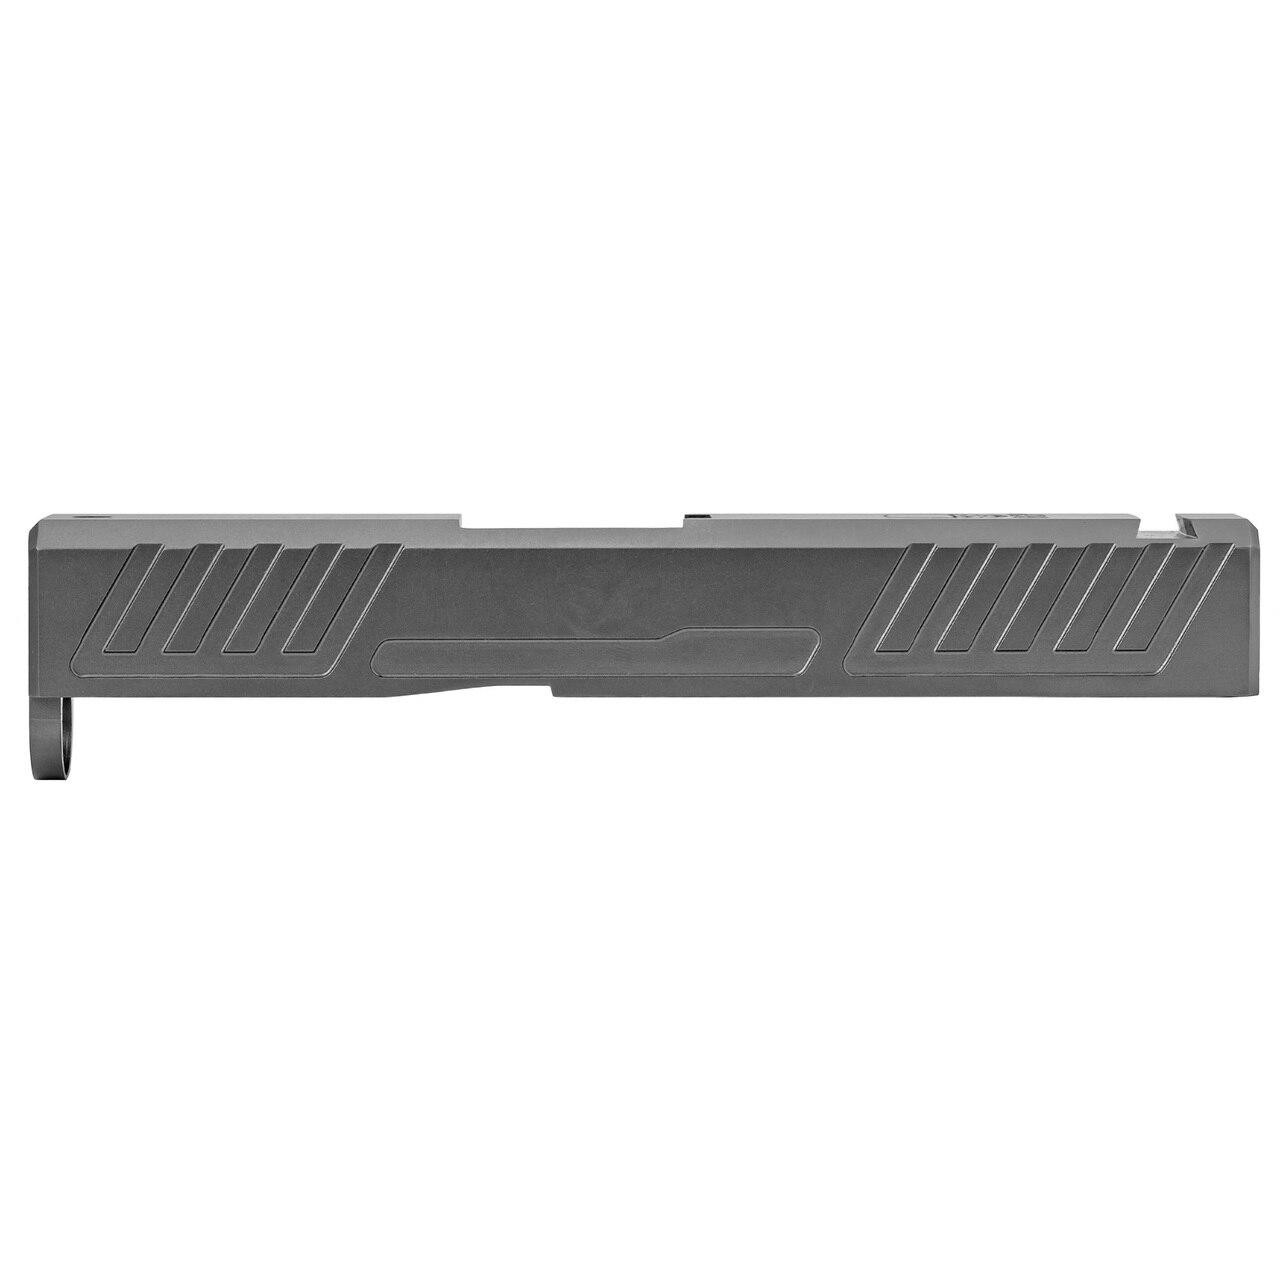 Grey Ghost Precision Ggp Slide For Glock 43 V1 Grey - CT35GGPGGPSPG43V1GRY 856054008086